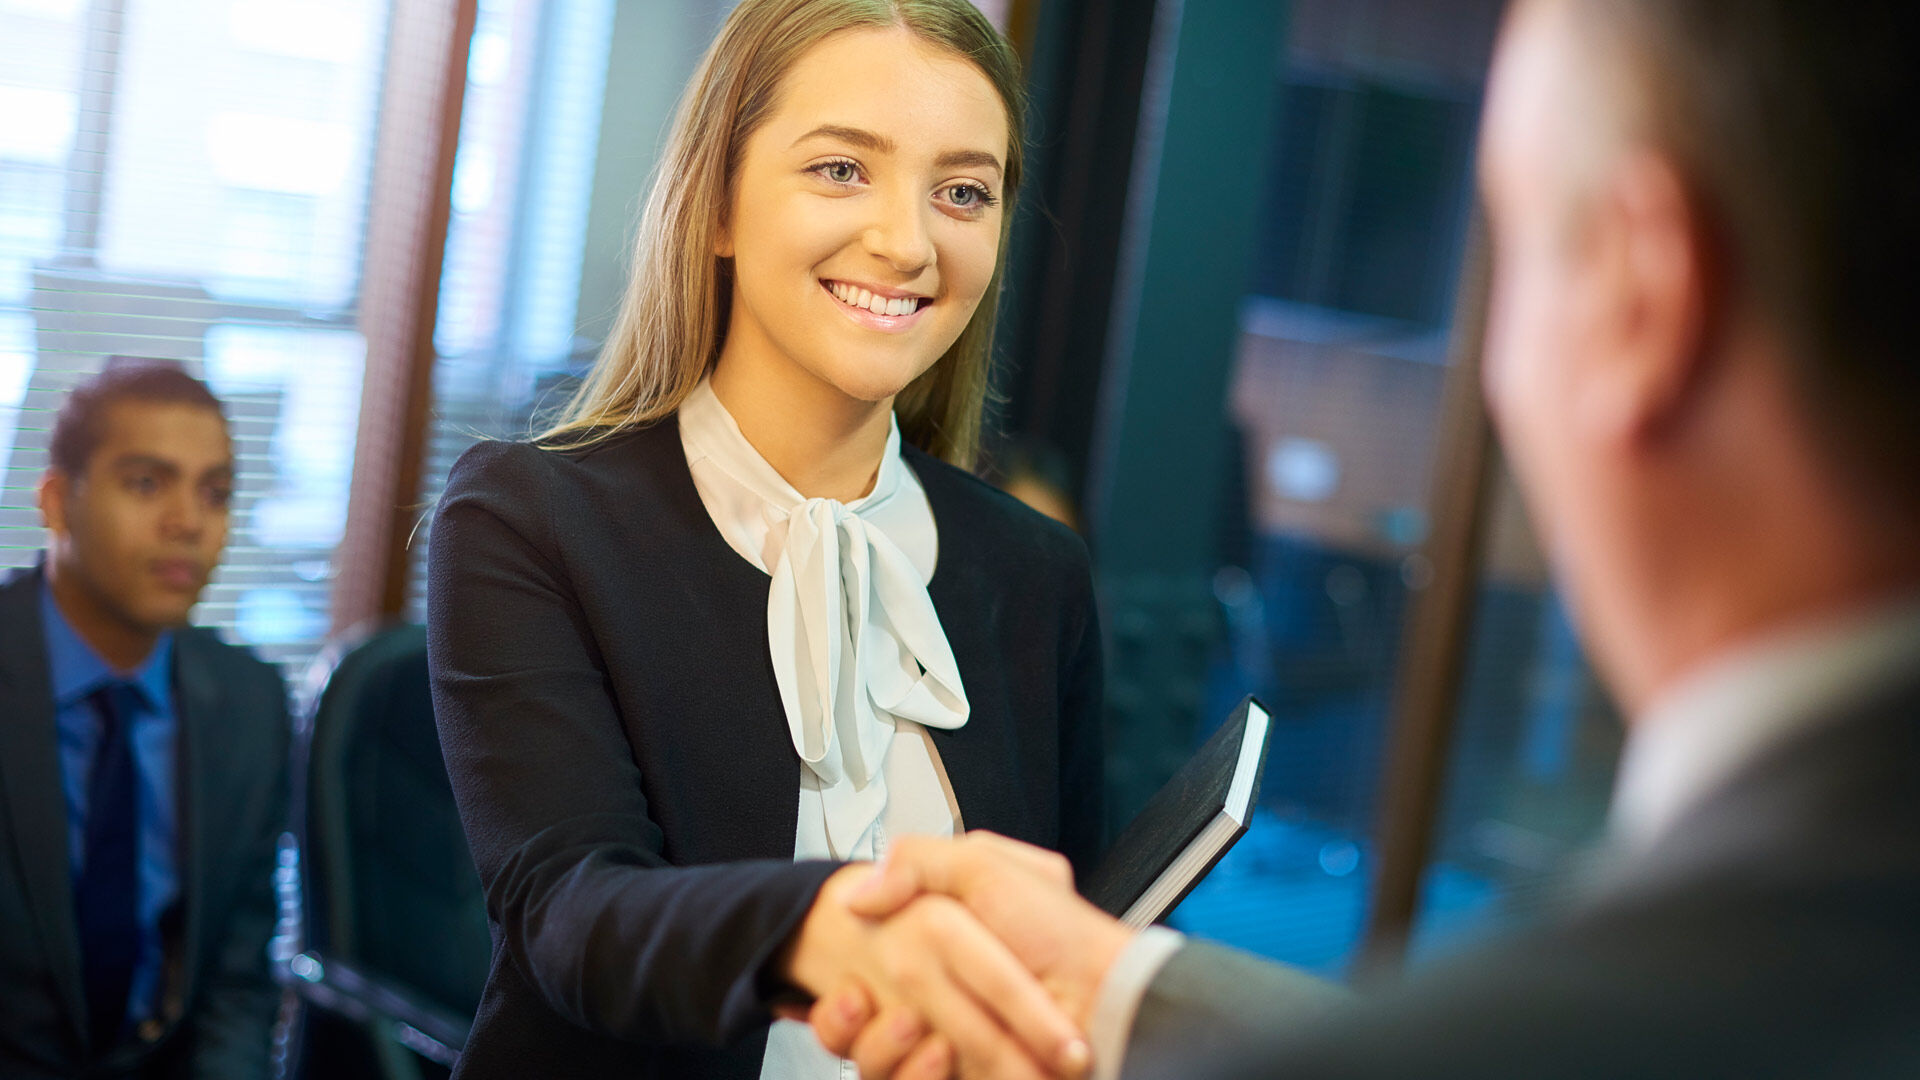 Une femme en tenue de travail serre la main d'une personne, signe de salutation ou d'accord professionnel dans un cadre de bureau.